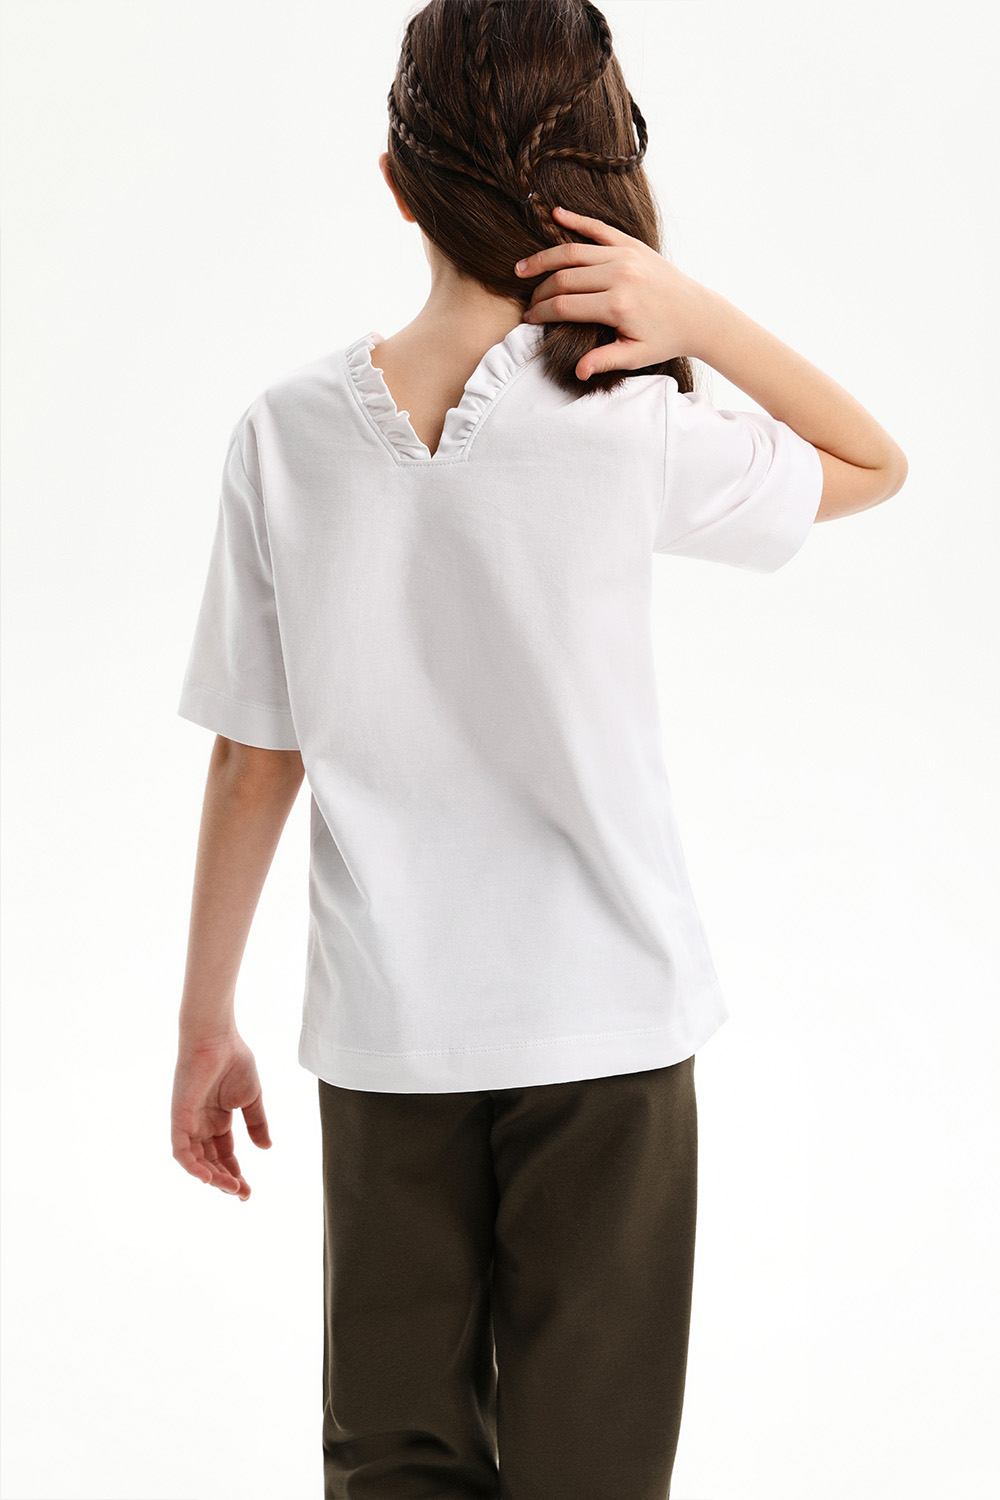 Хлопковая футболка с V-образным вырезом (SSLWG-328-22926-200) Silver Spoon